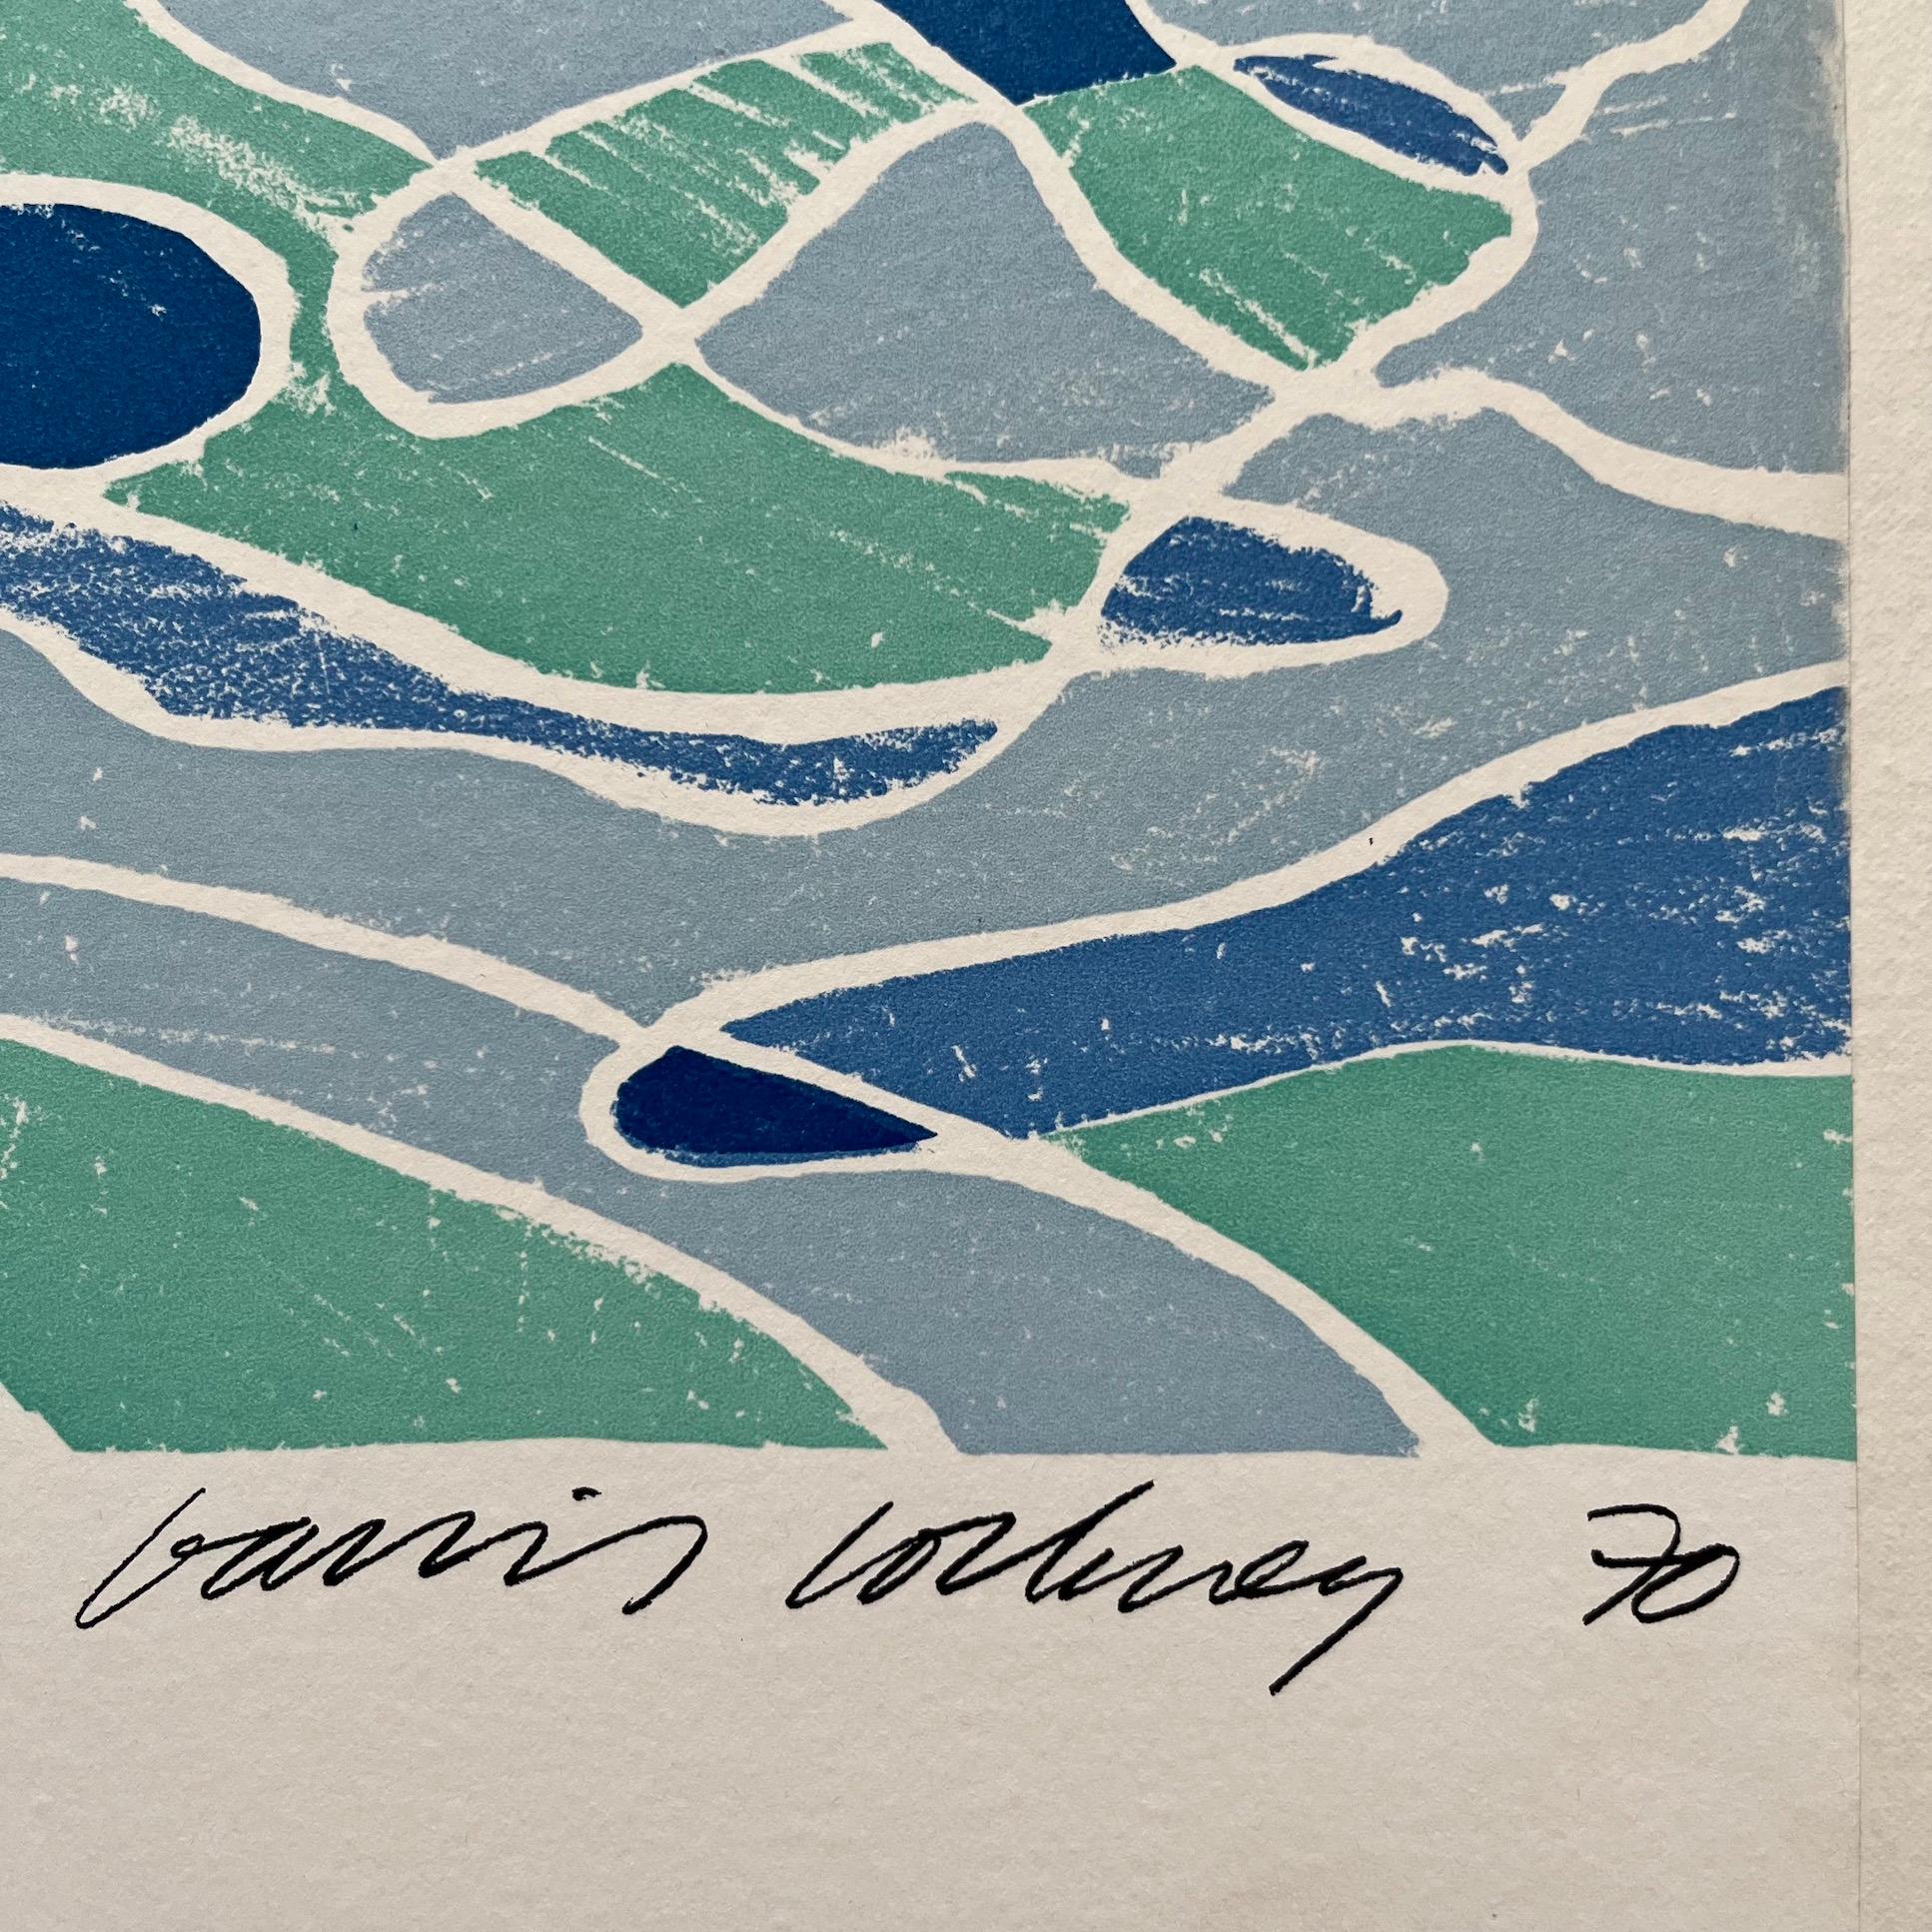 Cette image classique de David Hockney a été réalisée pour les Jeux Olympiques de 1972 qui se sont déroulés à Munich du 26 août au 10 septembre. La XXème Olympiade a compté 195 événements sportifs et plus de 7000 athlètes venus de 121 nations - il